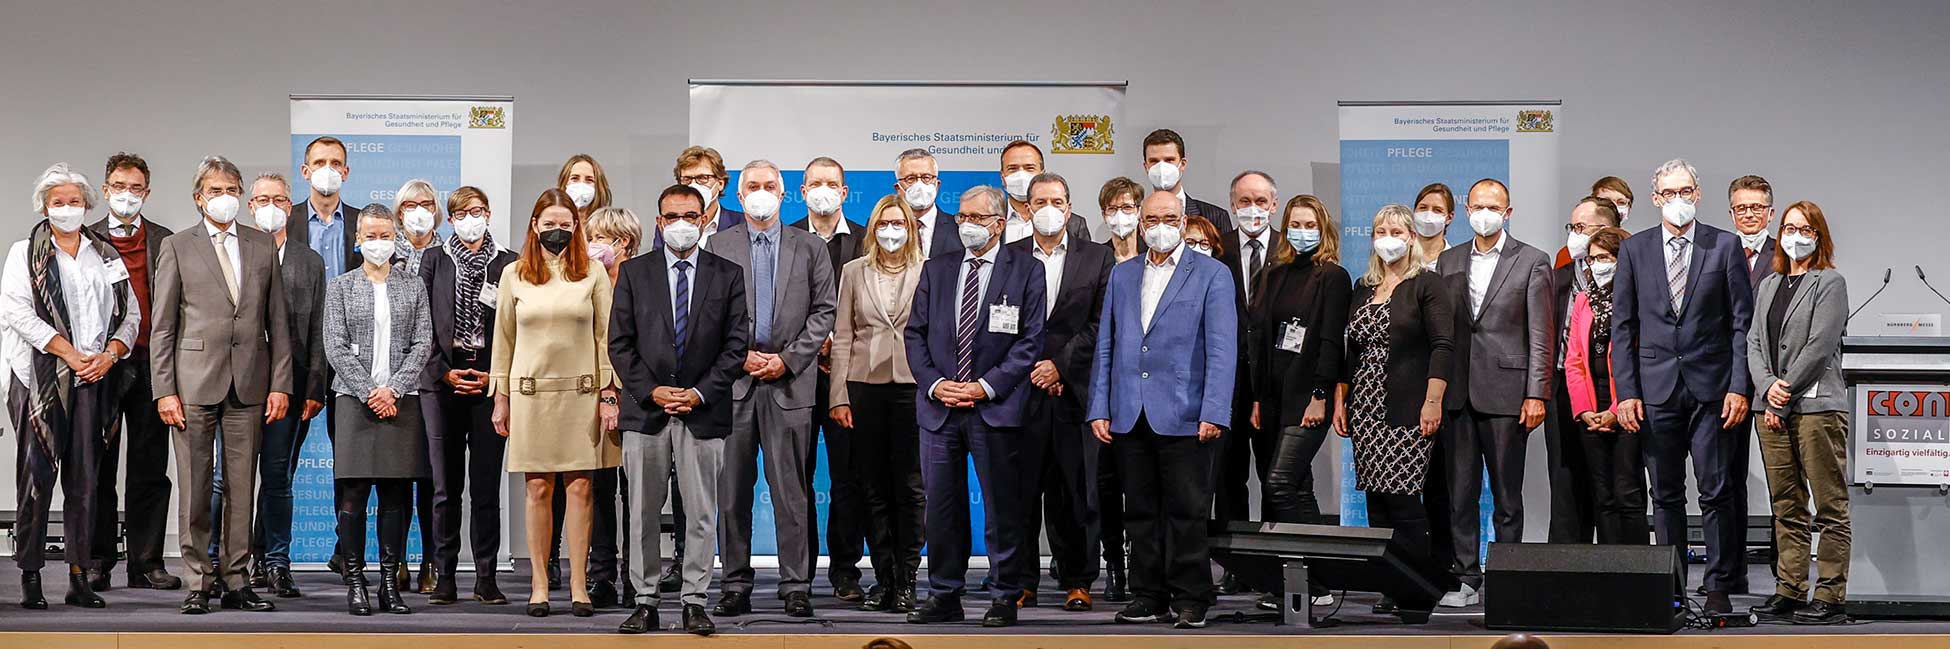 Treffen im Zuge der Erweiterung des "Bündnisses für generalistische Pflegeausbildung" am 10. November 2021 auf der Messe "ConSozial" in Nürnberg mit Gesundheitsminister Klaus Holetschek